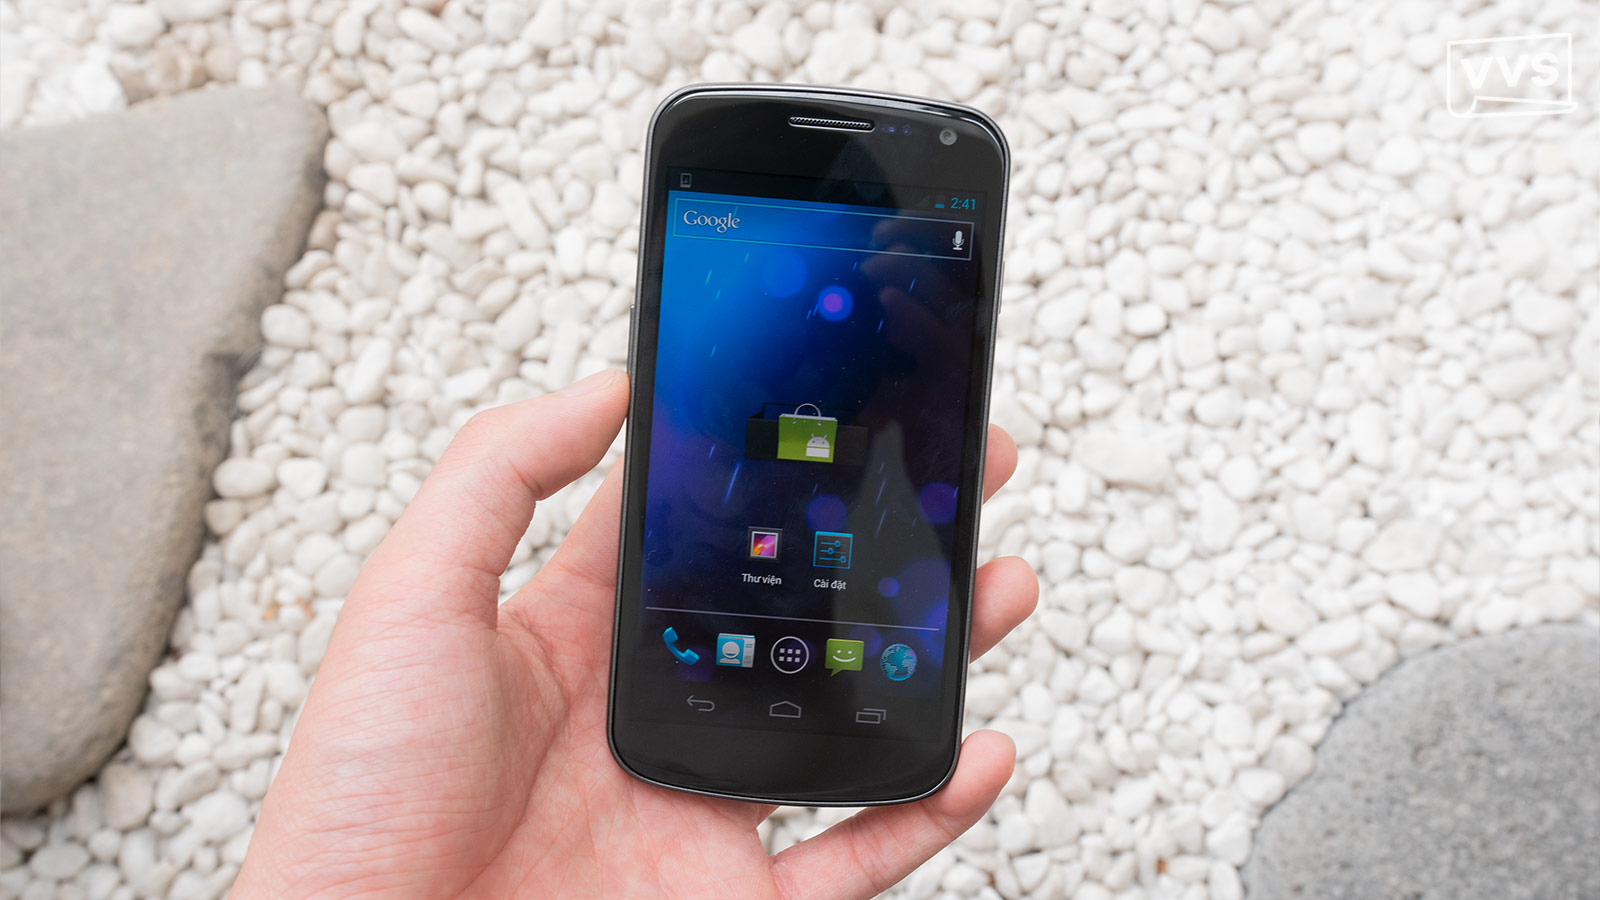 Nexus 7 thế hệ 2 lộ diện gần như hoàn chỉnh